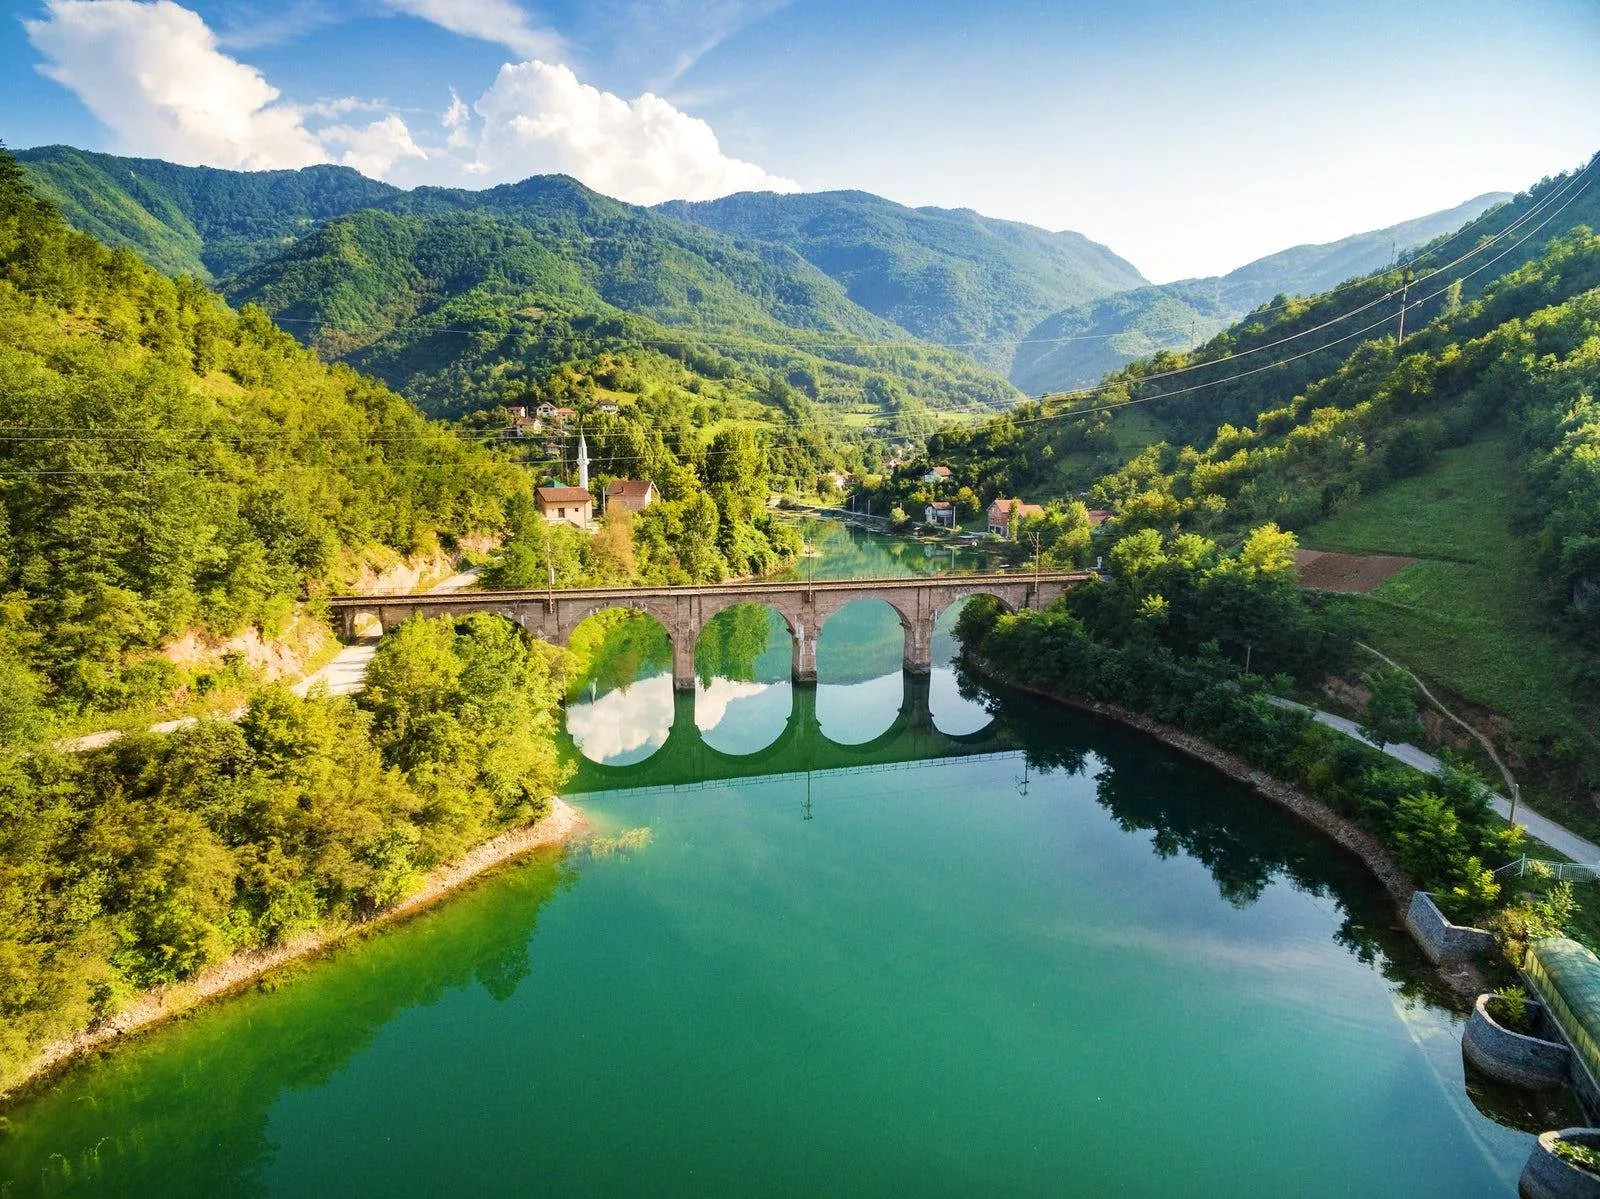 اماكن سياحية   سياحة   سفر   السياحة في البوسنة   البوسنة